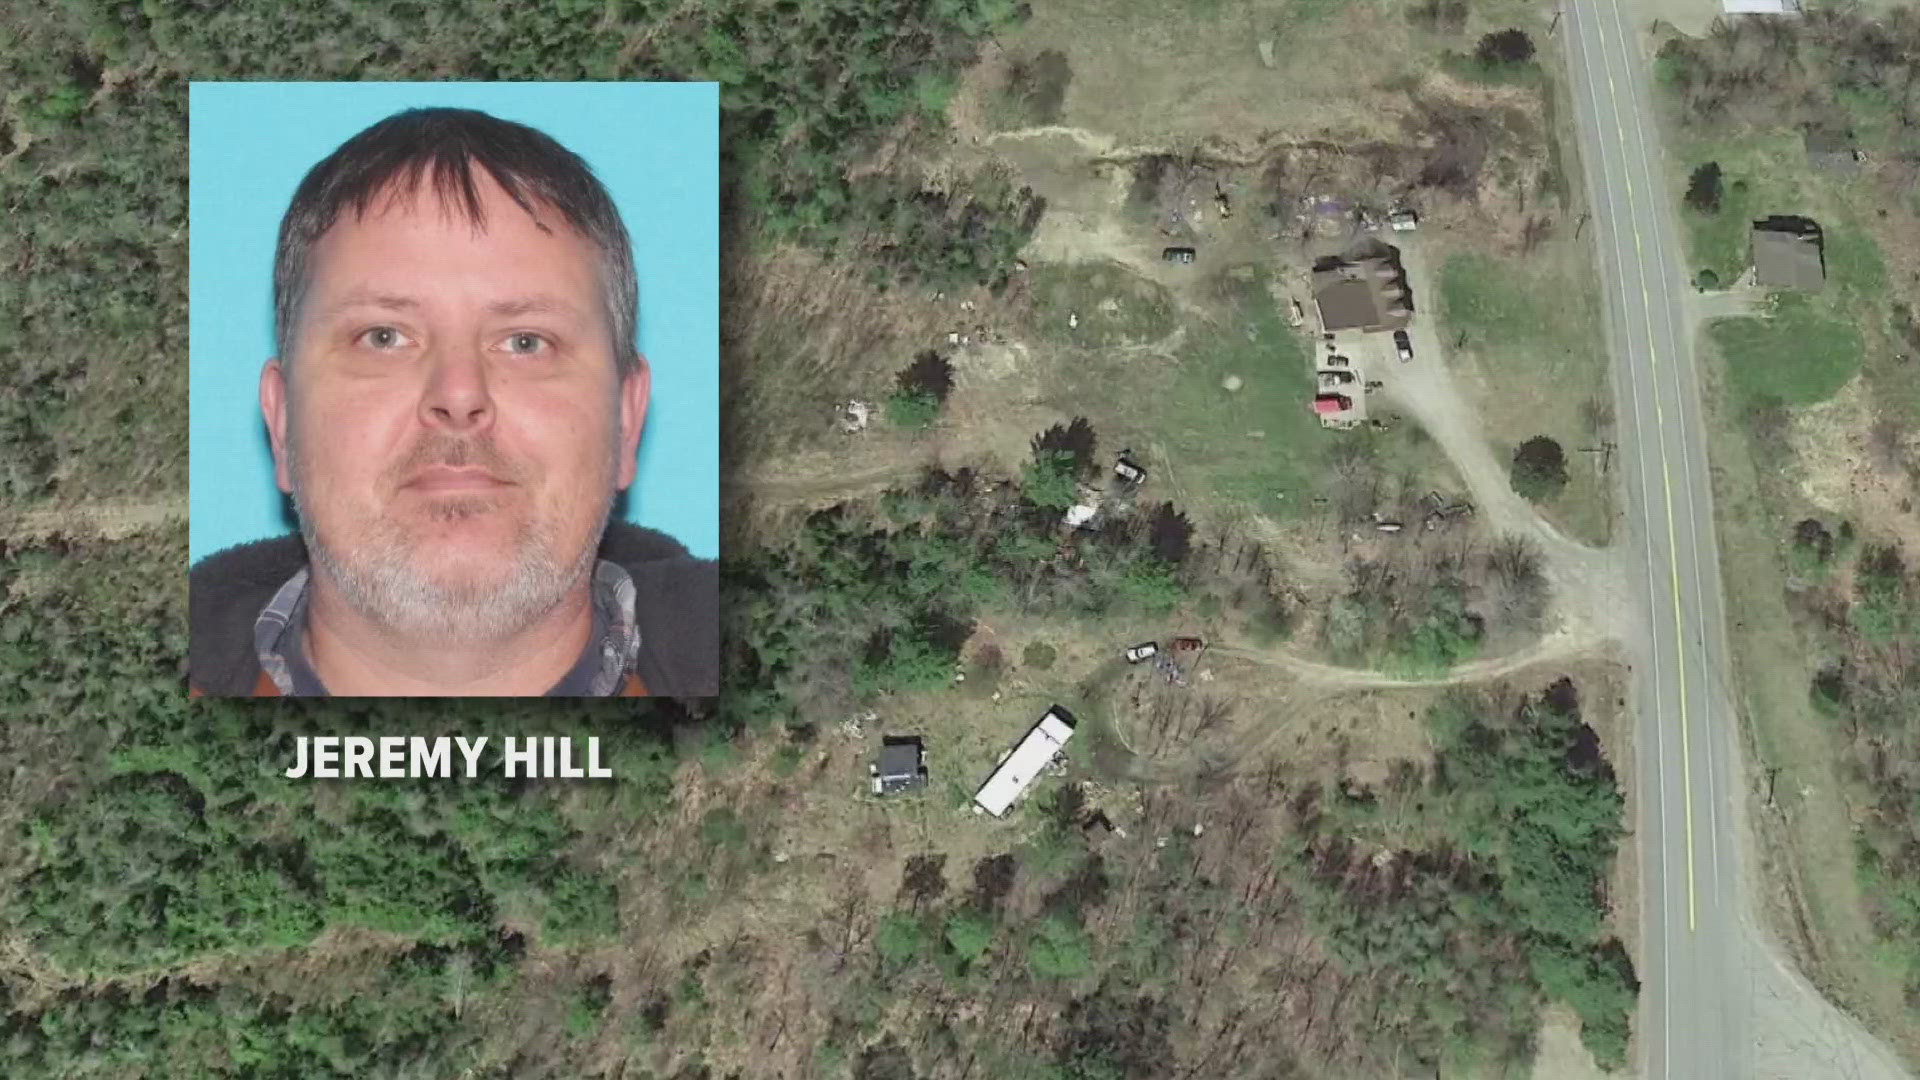 A tip line was established for Jeremy Hill, who went missing April 18.